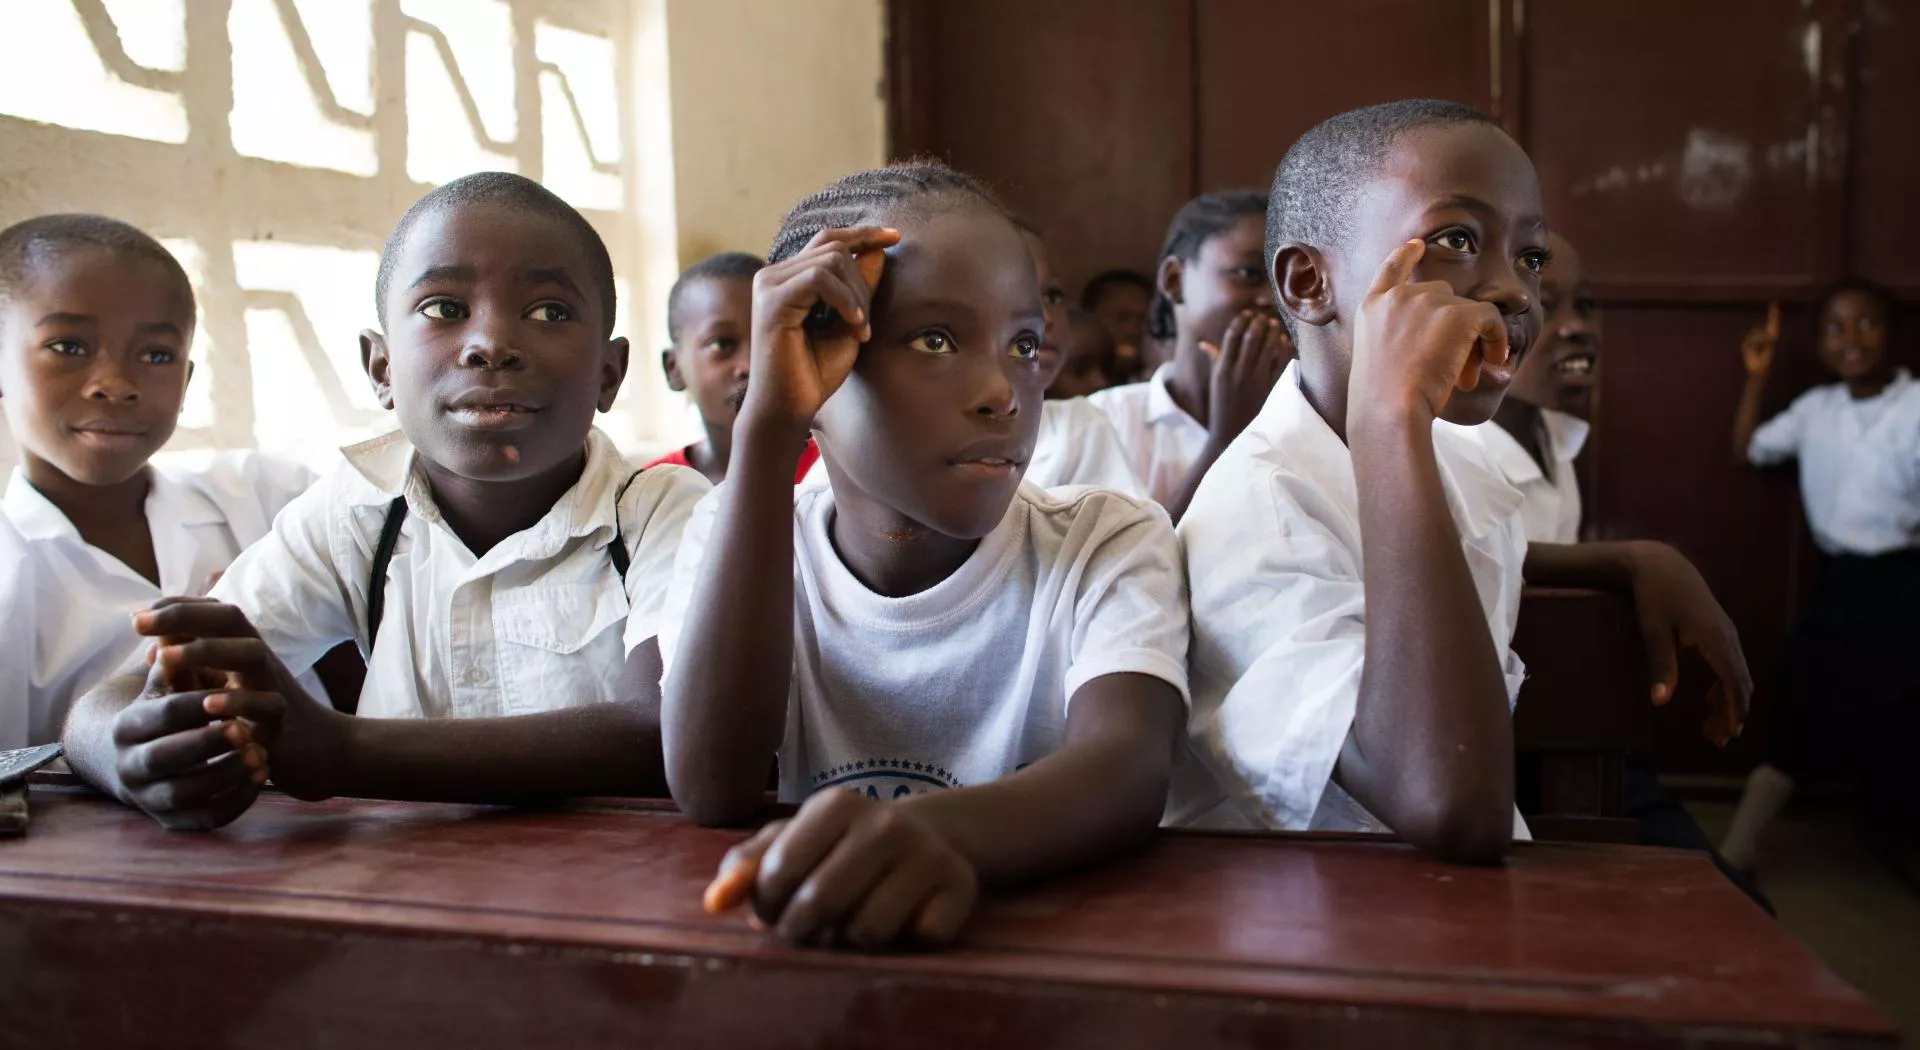 Children in school in Uganda